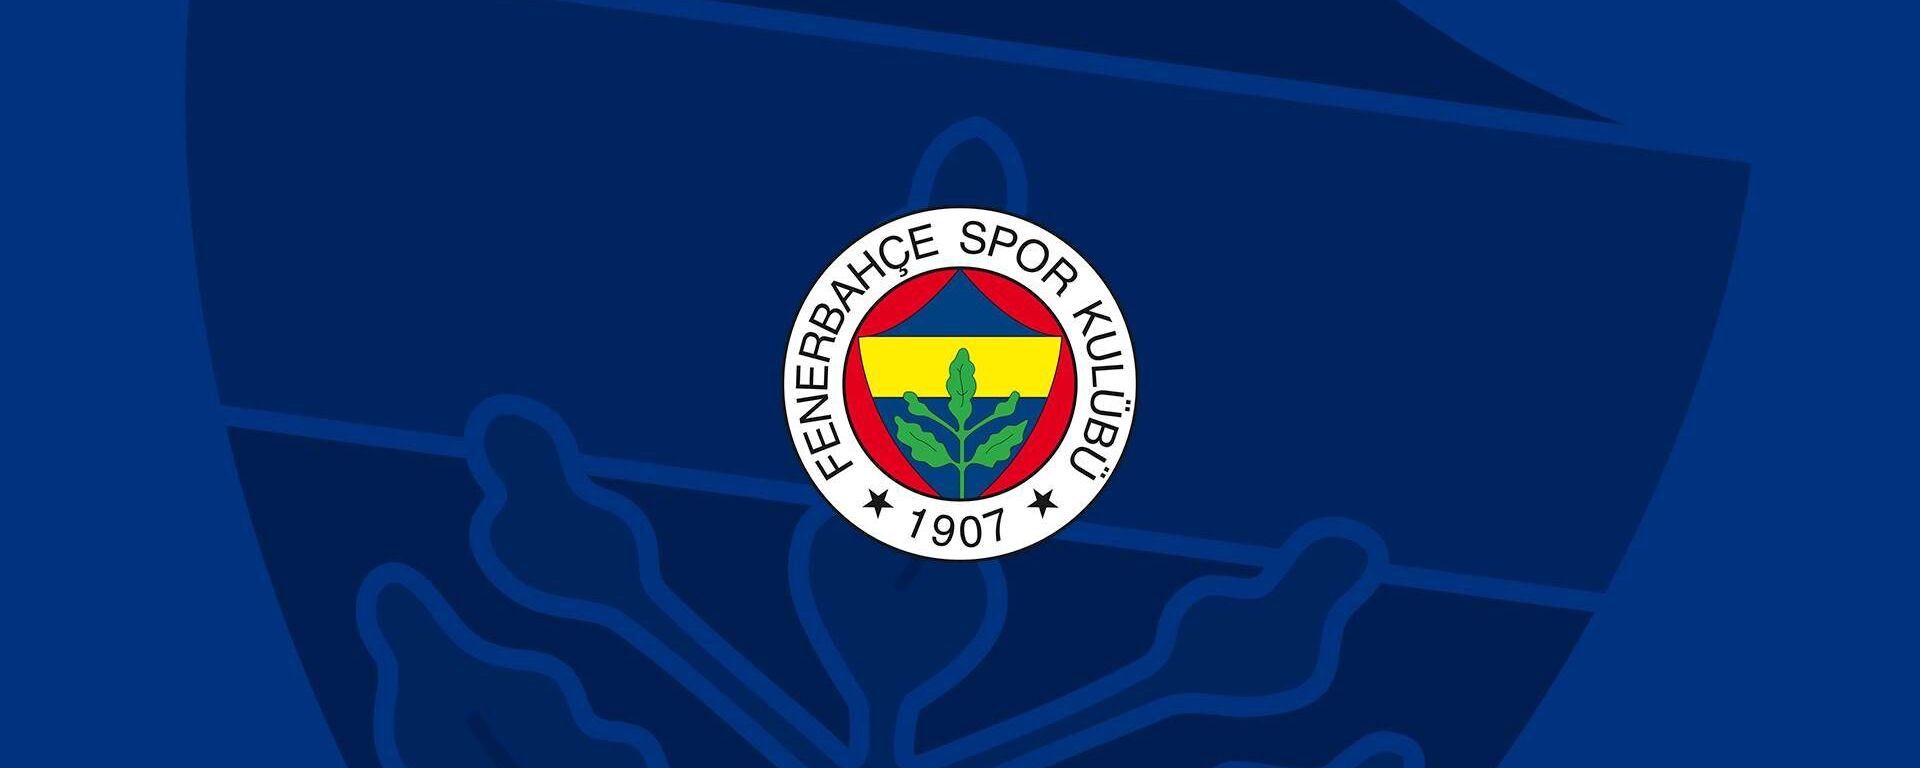 Fenerbahçe Spor Kulübü logosu - Sputnik Türkiye, 1920, 06.03.2021